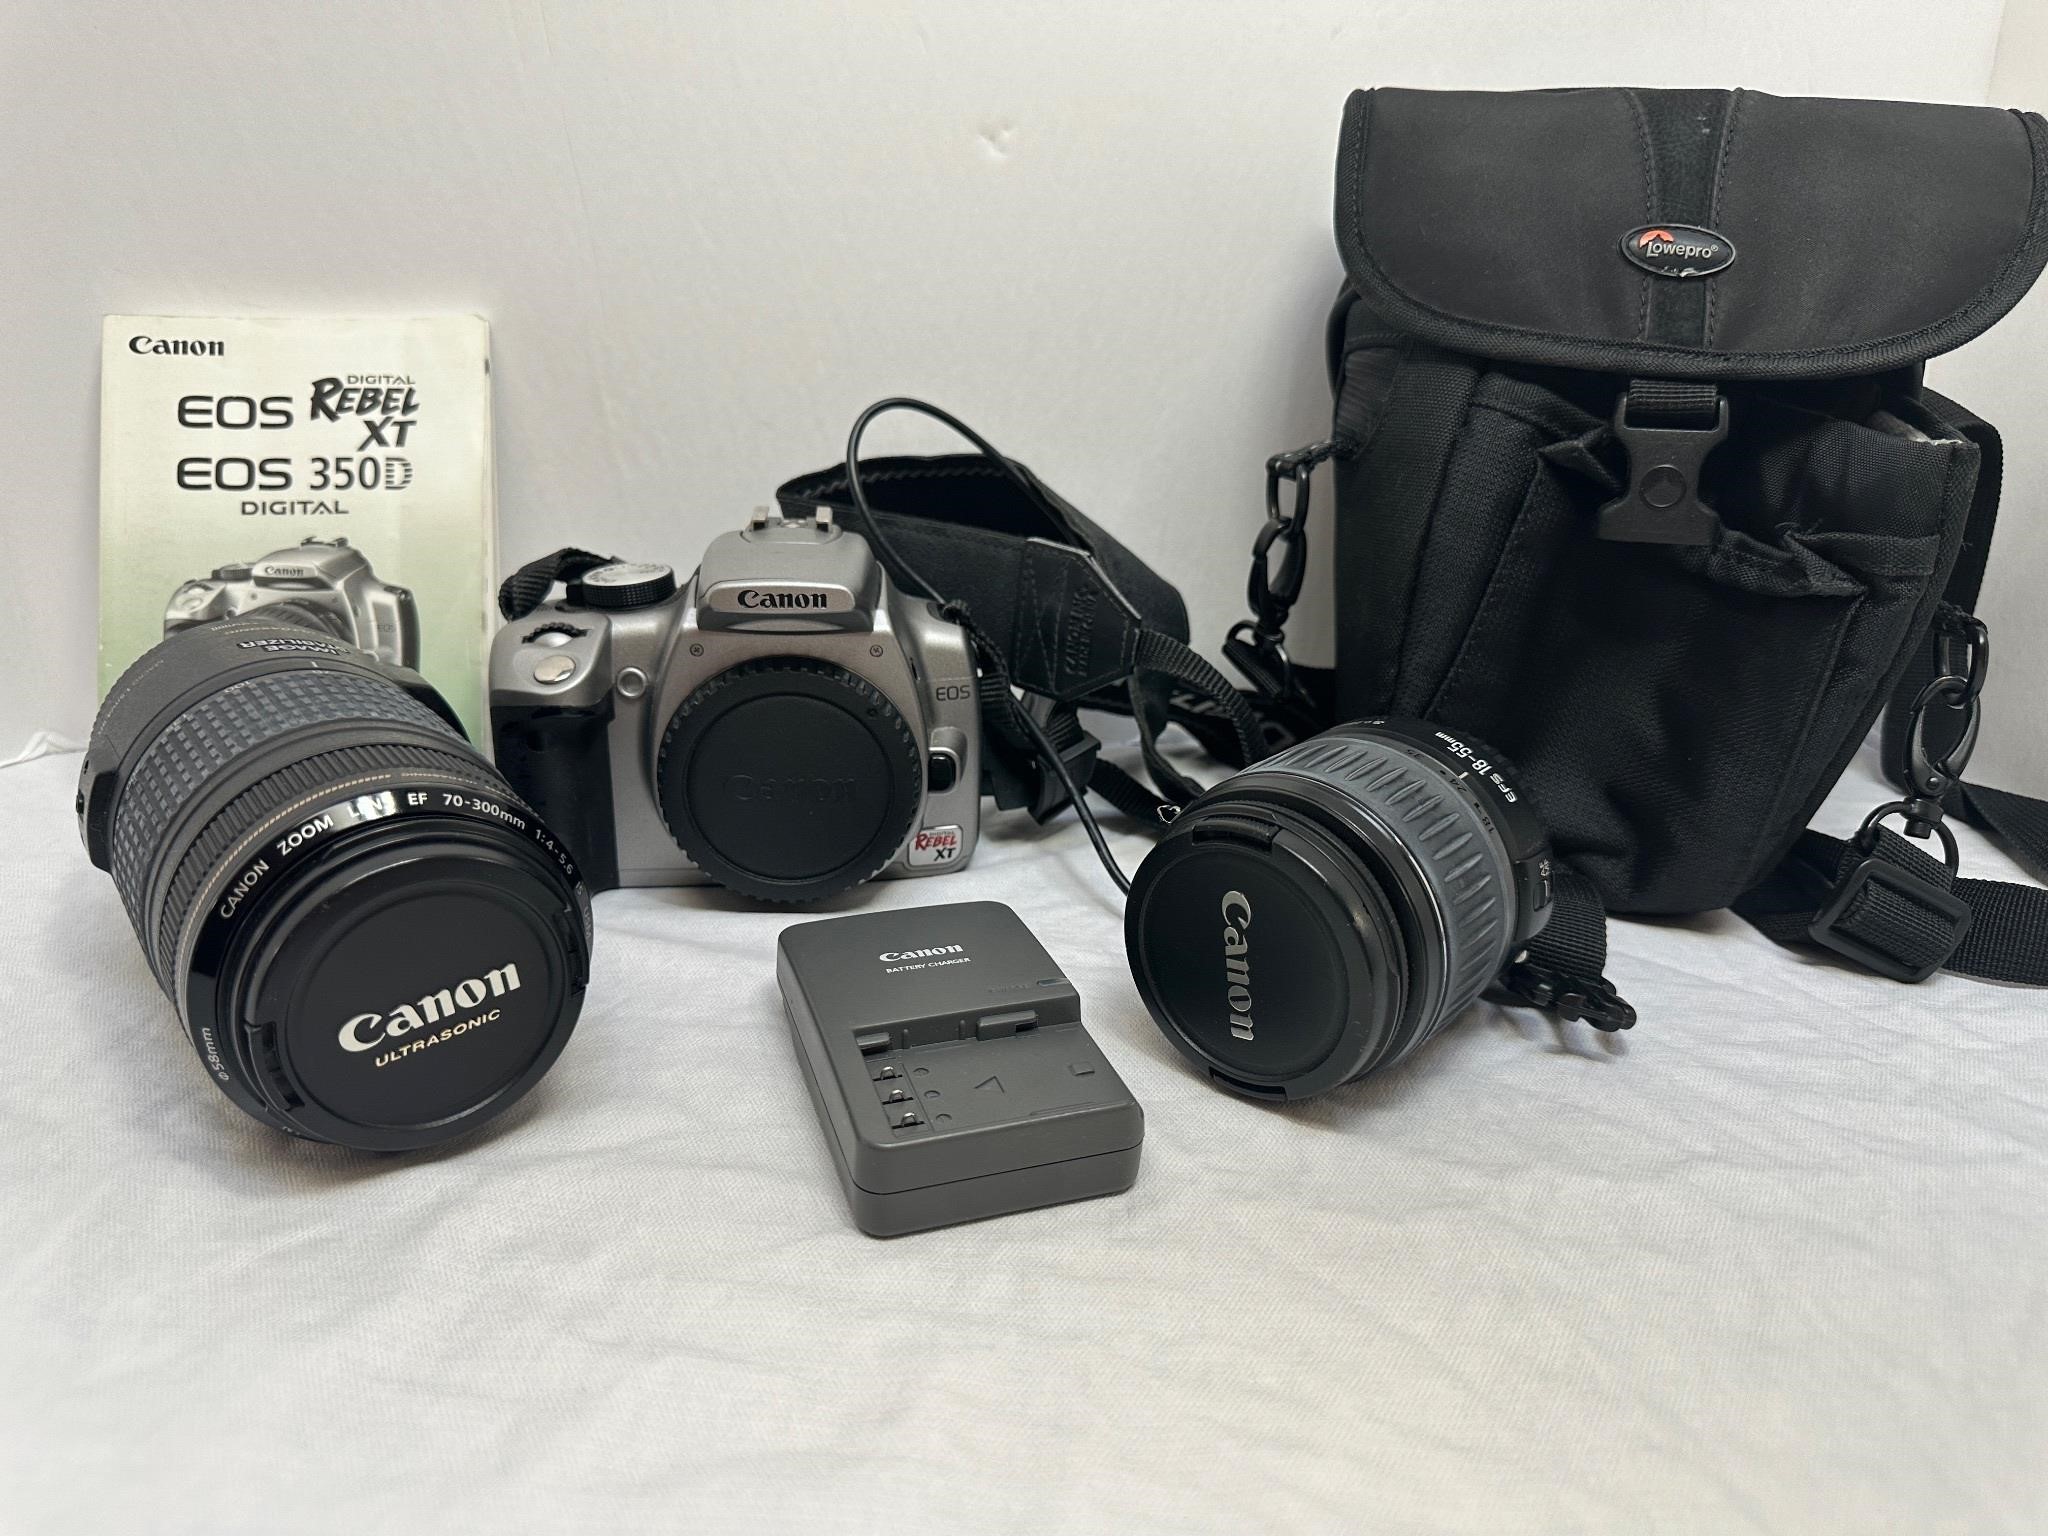 Canon Rebel EOS w/ Lenses in Bag